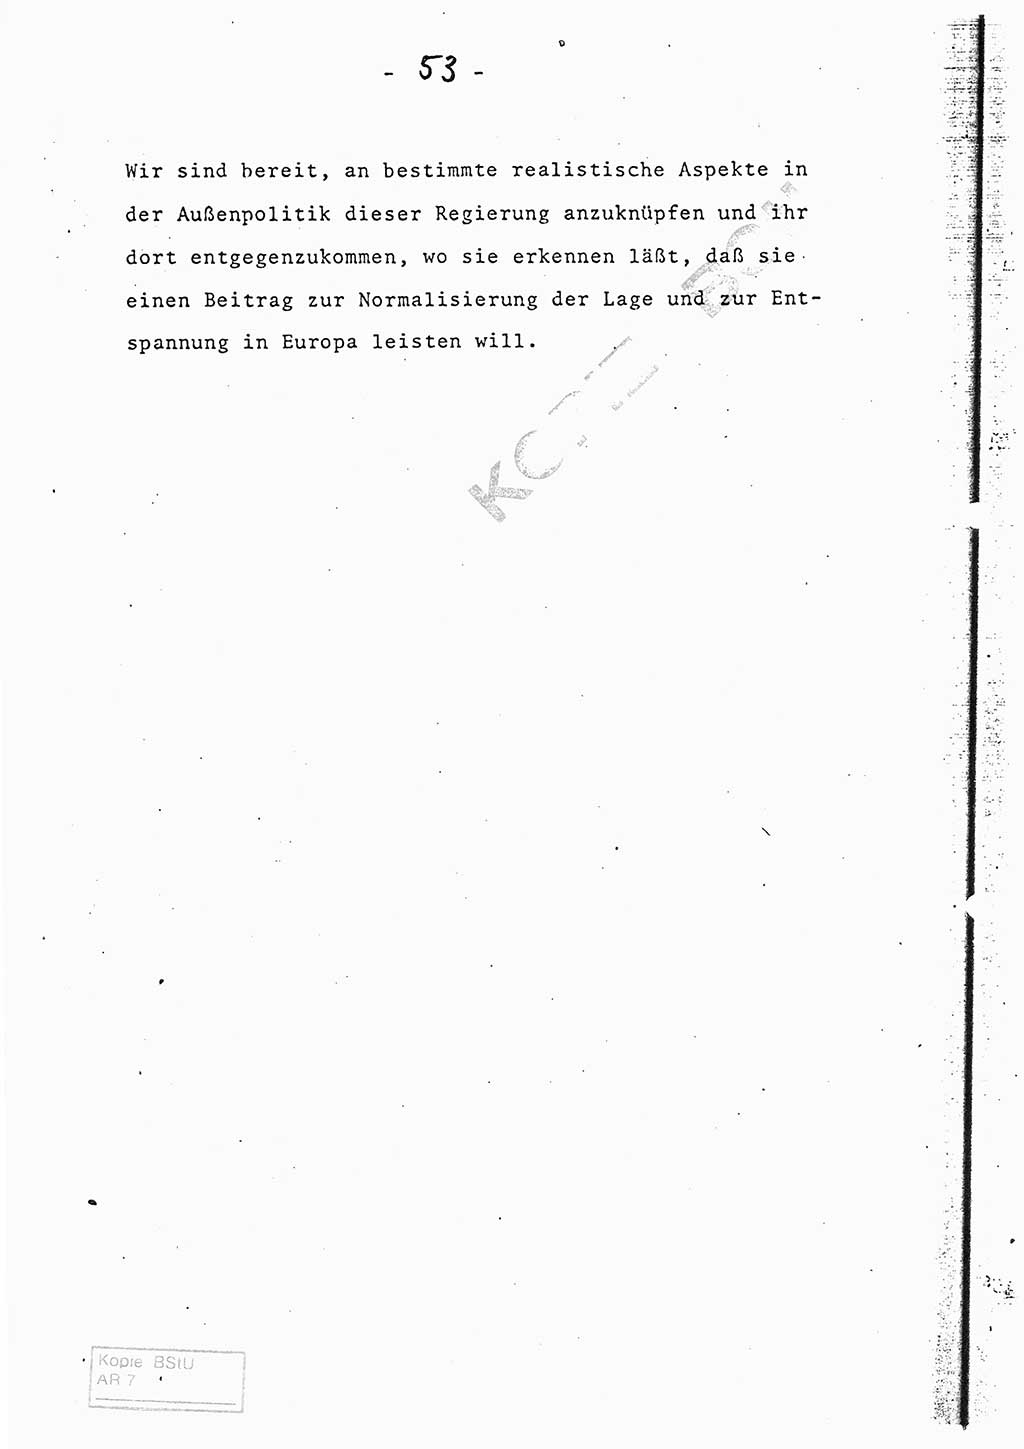 Referat (Entwurf) des Genossen Minister (Generaloberst Erich Mielke) auf der Dienstkonferenz 1972, Ministerium für Staatssicherheit (MfS) [Deutsche Demokratische Republik (DDR)], Der Minister, Geheime Verschlußsache (GVS) 008-150/72, Berlin 25.2.1972, Seite 53 (Ref. Entw. DK MfS DDR Min. GVS 008-150/72 1972, S. 53)